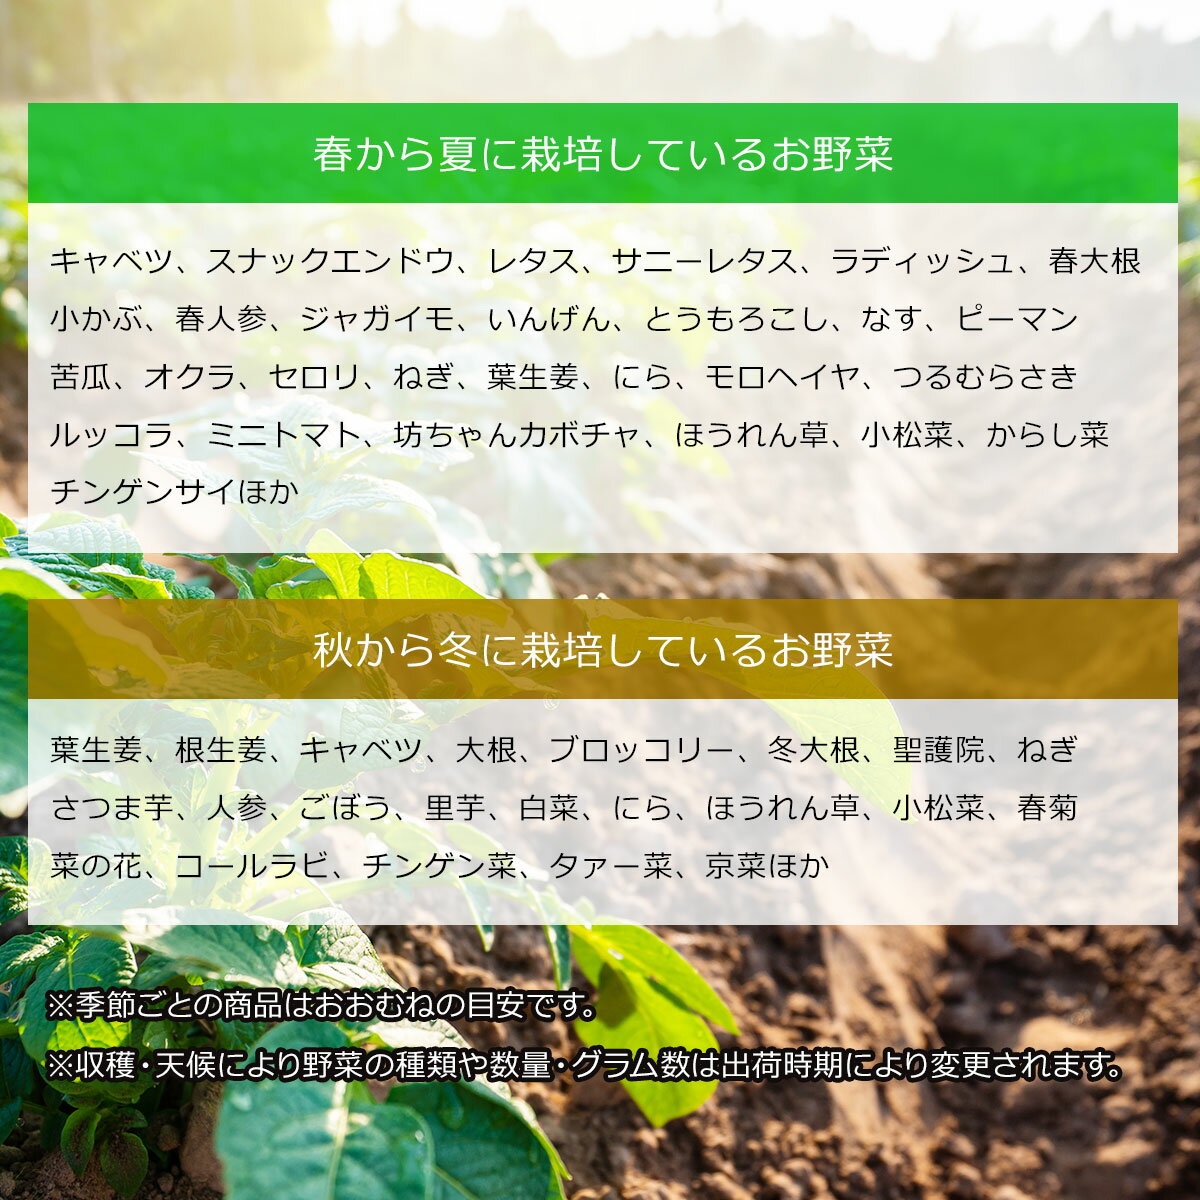 生産者限定 JAS認証有機野菜BOX Bセット【産直グルメ】